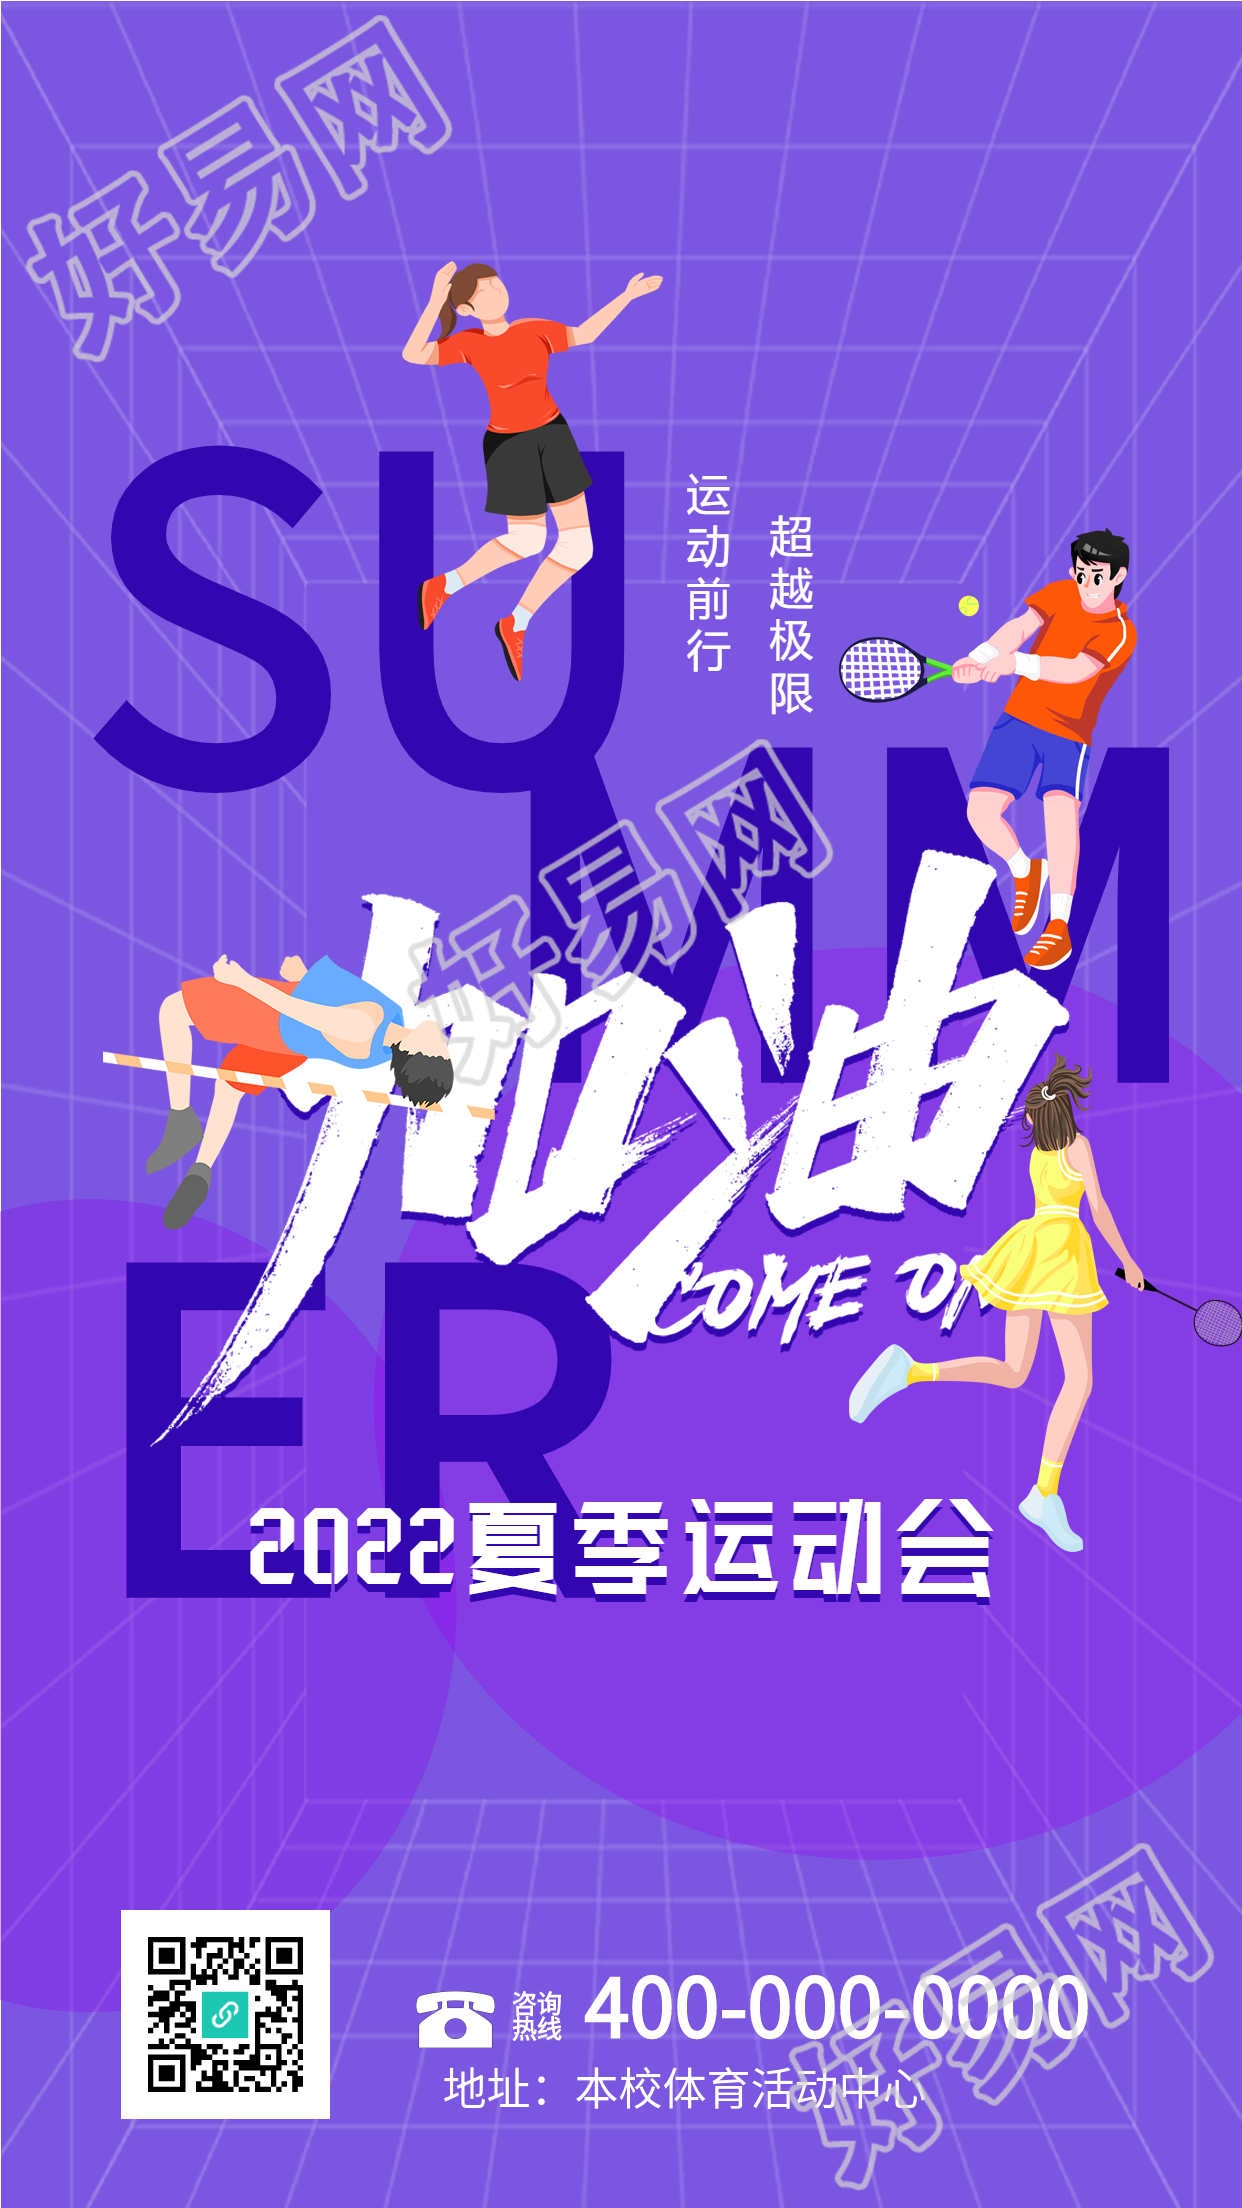 校园夏季运动会紫色网格海报